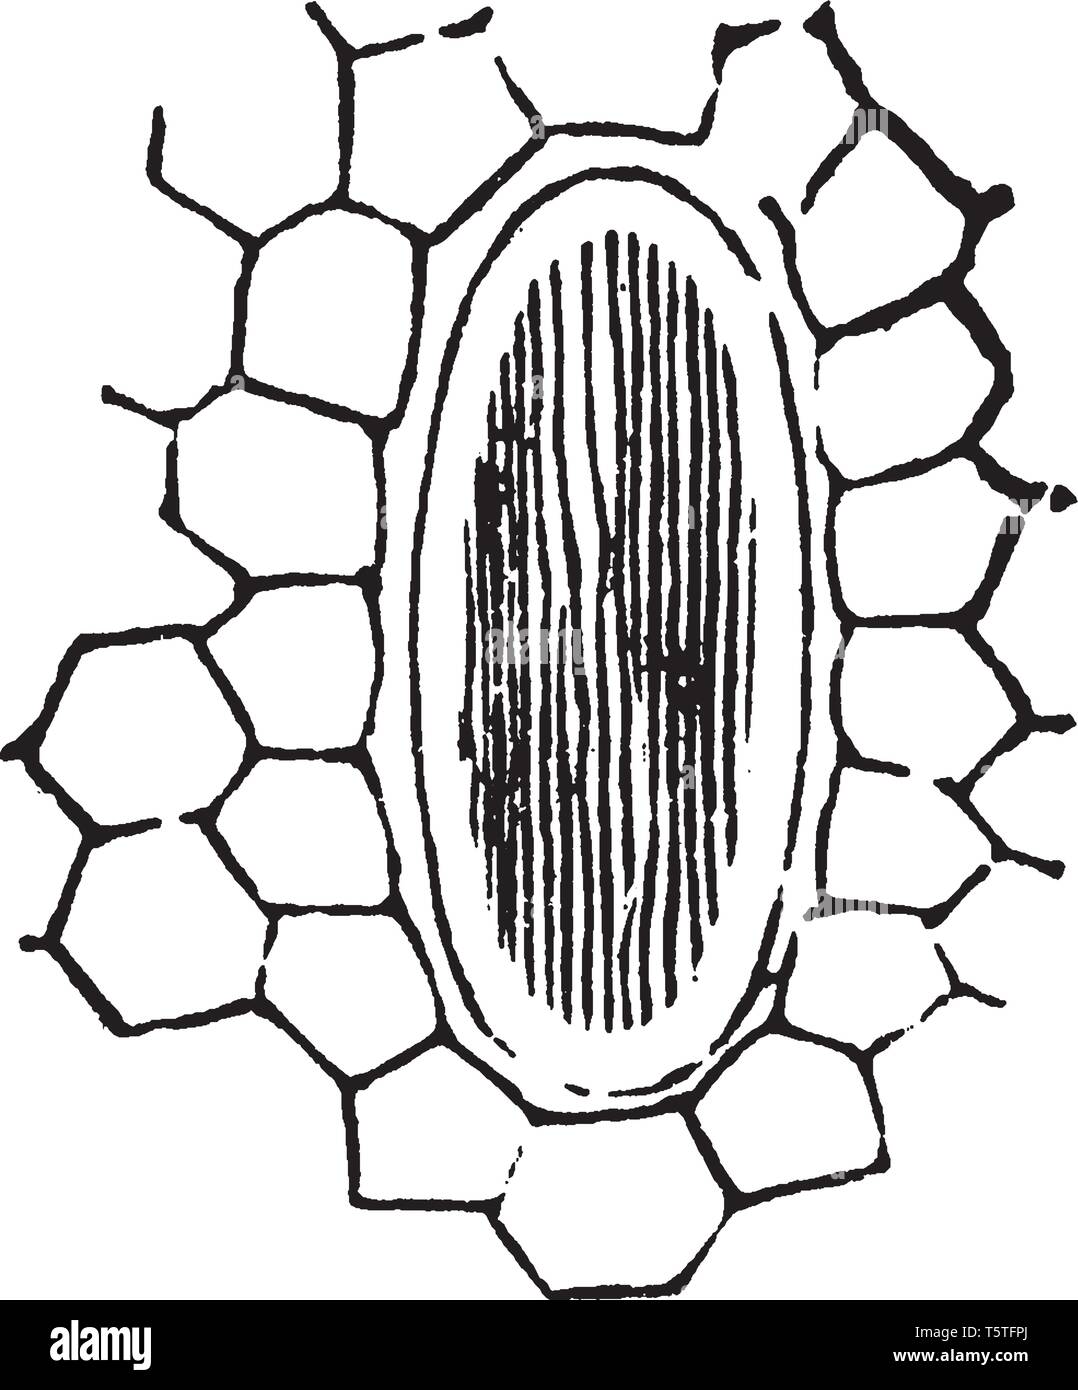 Una foto che mostra le cellule del Rafides Arisaema, con piccole celle circostanti, vintage disegno della linea di incisione o illustrazione. Illustrazione Vettoriale